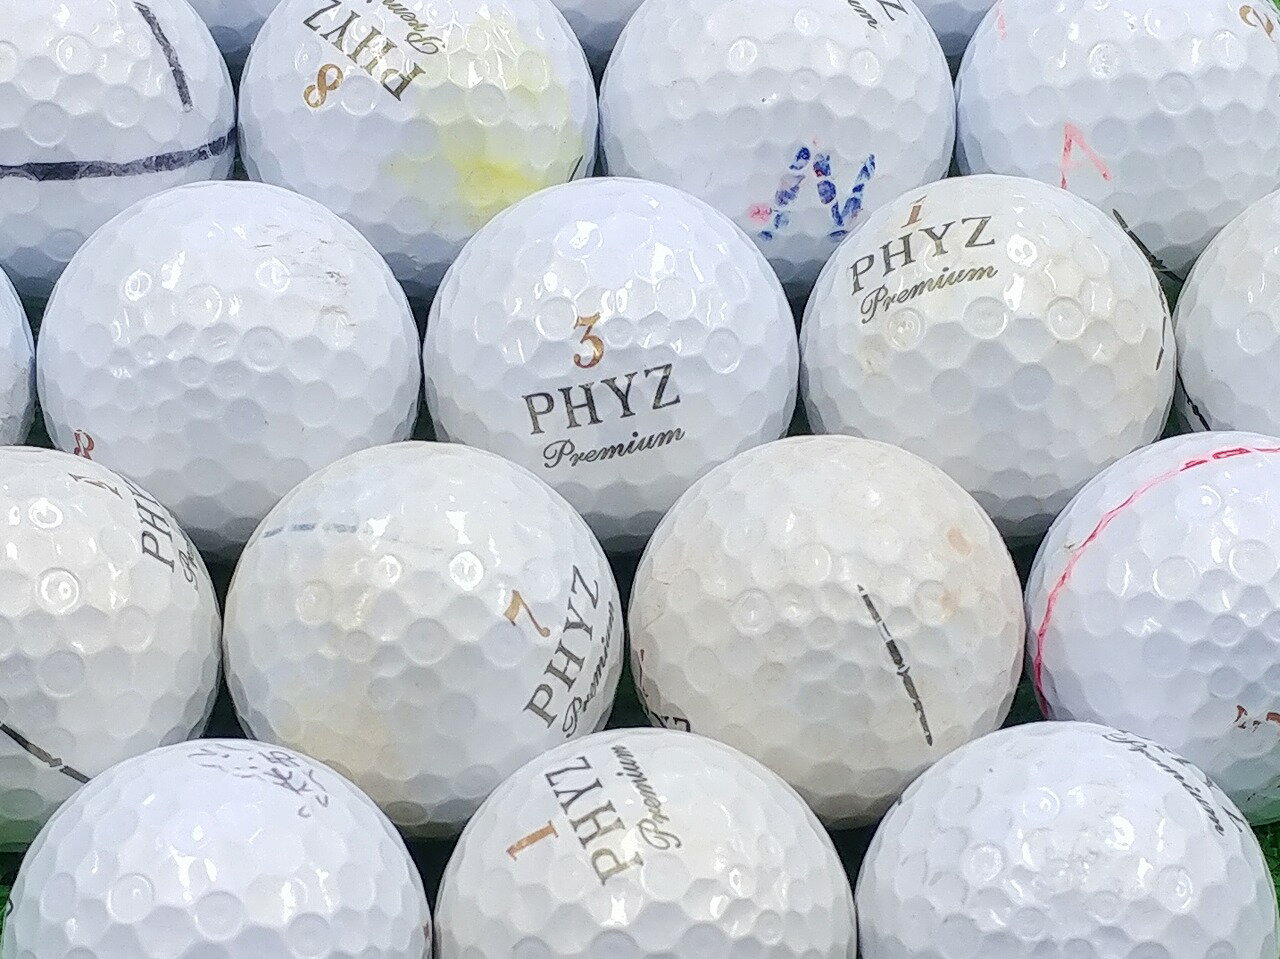 【中古】【Bランク】BRIDGESTONE GOLF PHYZ Premium 2014年モデル ゴールドパール 1個 ロストボール ゴルフボール